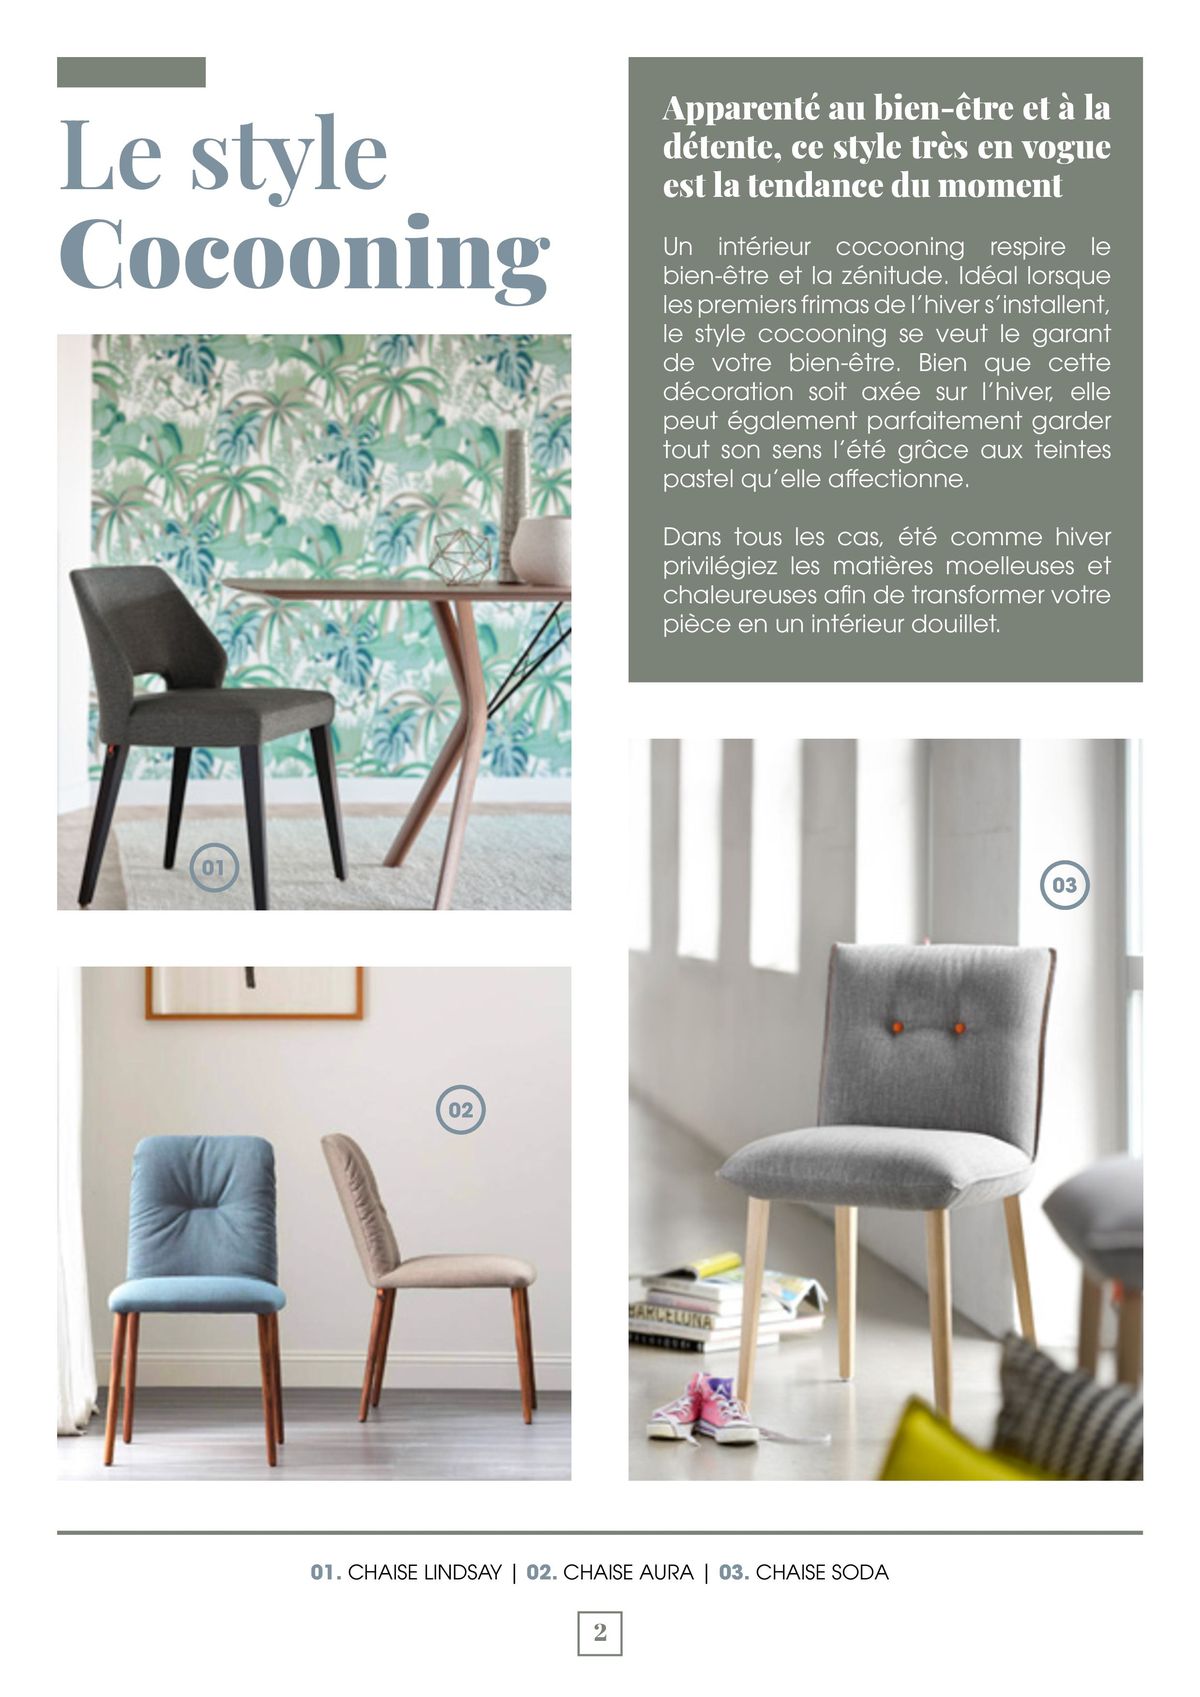 Catalogue Les meubles cocooning apporteront un vent de zénitude absolue à votre intérieur, page 00002